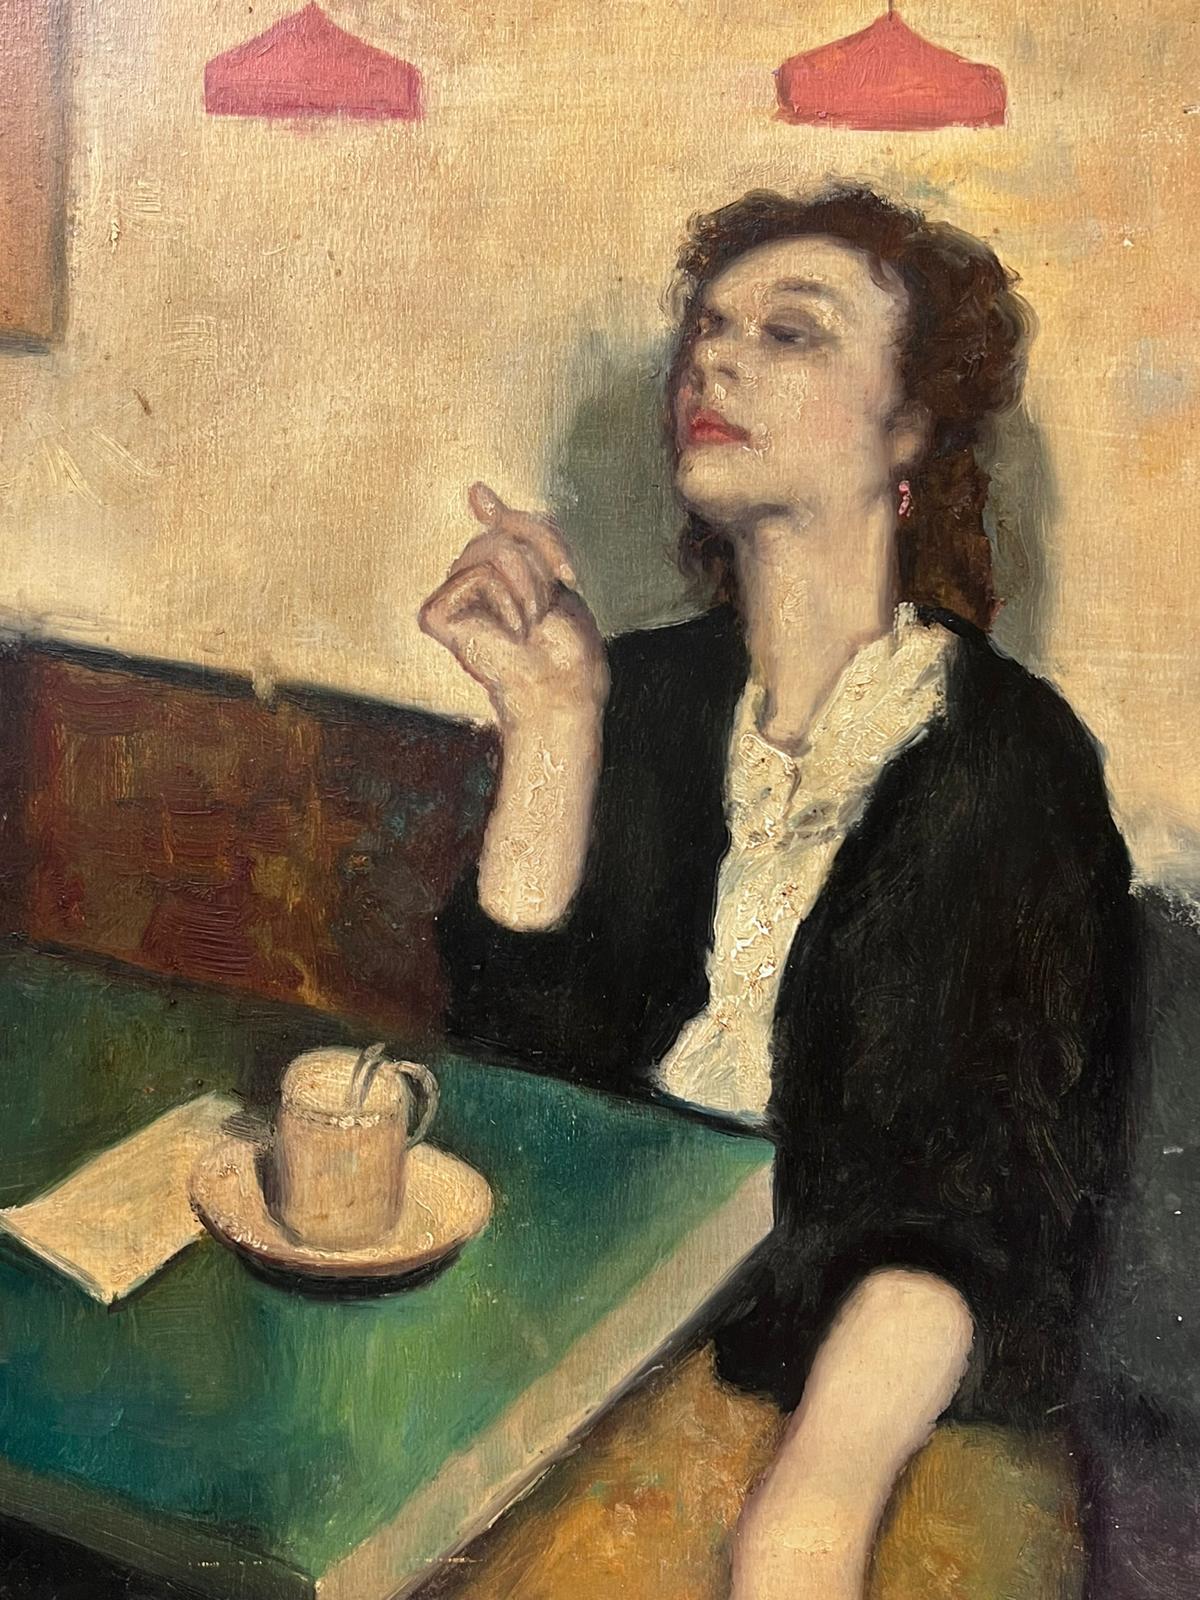 1950's Französisch signiert Ölgemälde Frau sitzt in Cafe Interieur in nachdenklicher Stimmung – Painting von French School 